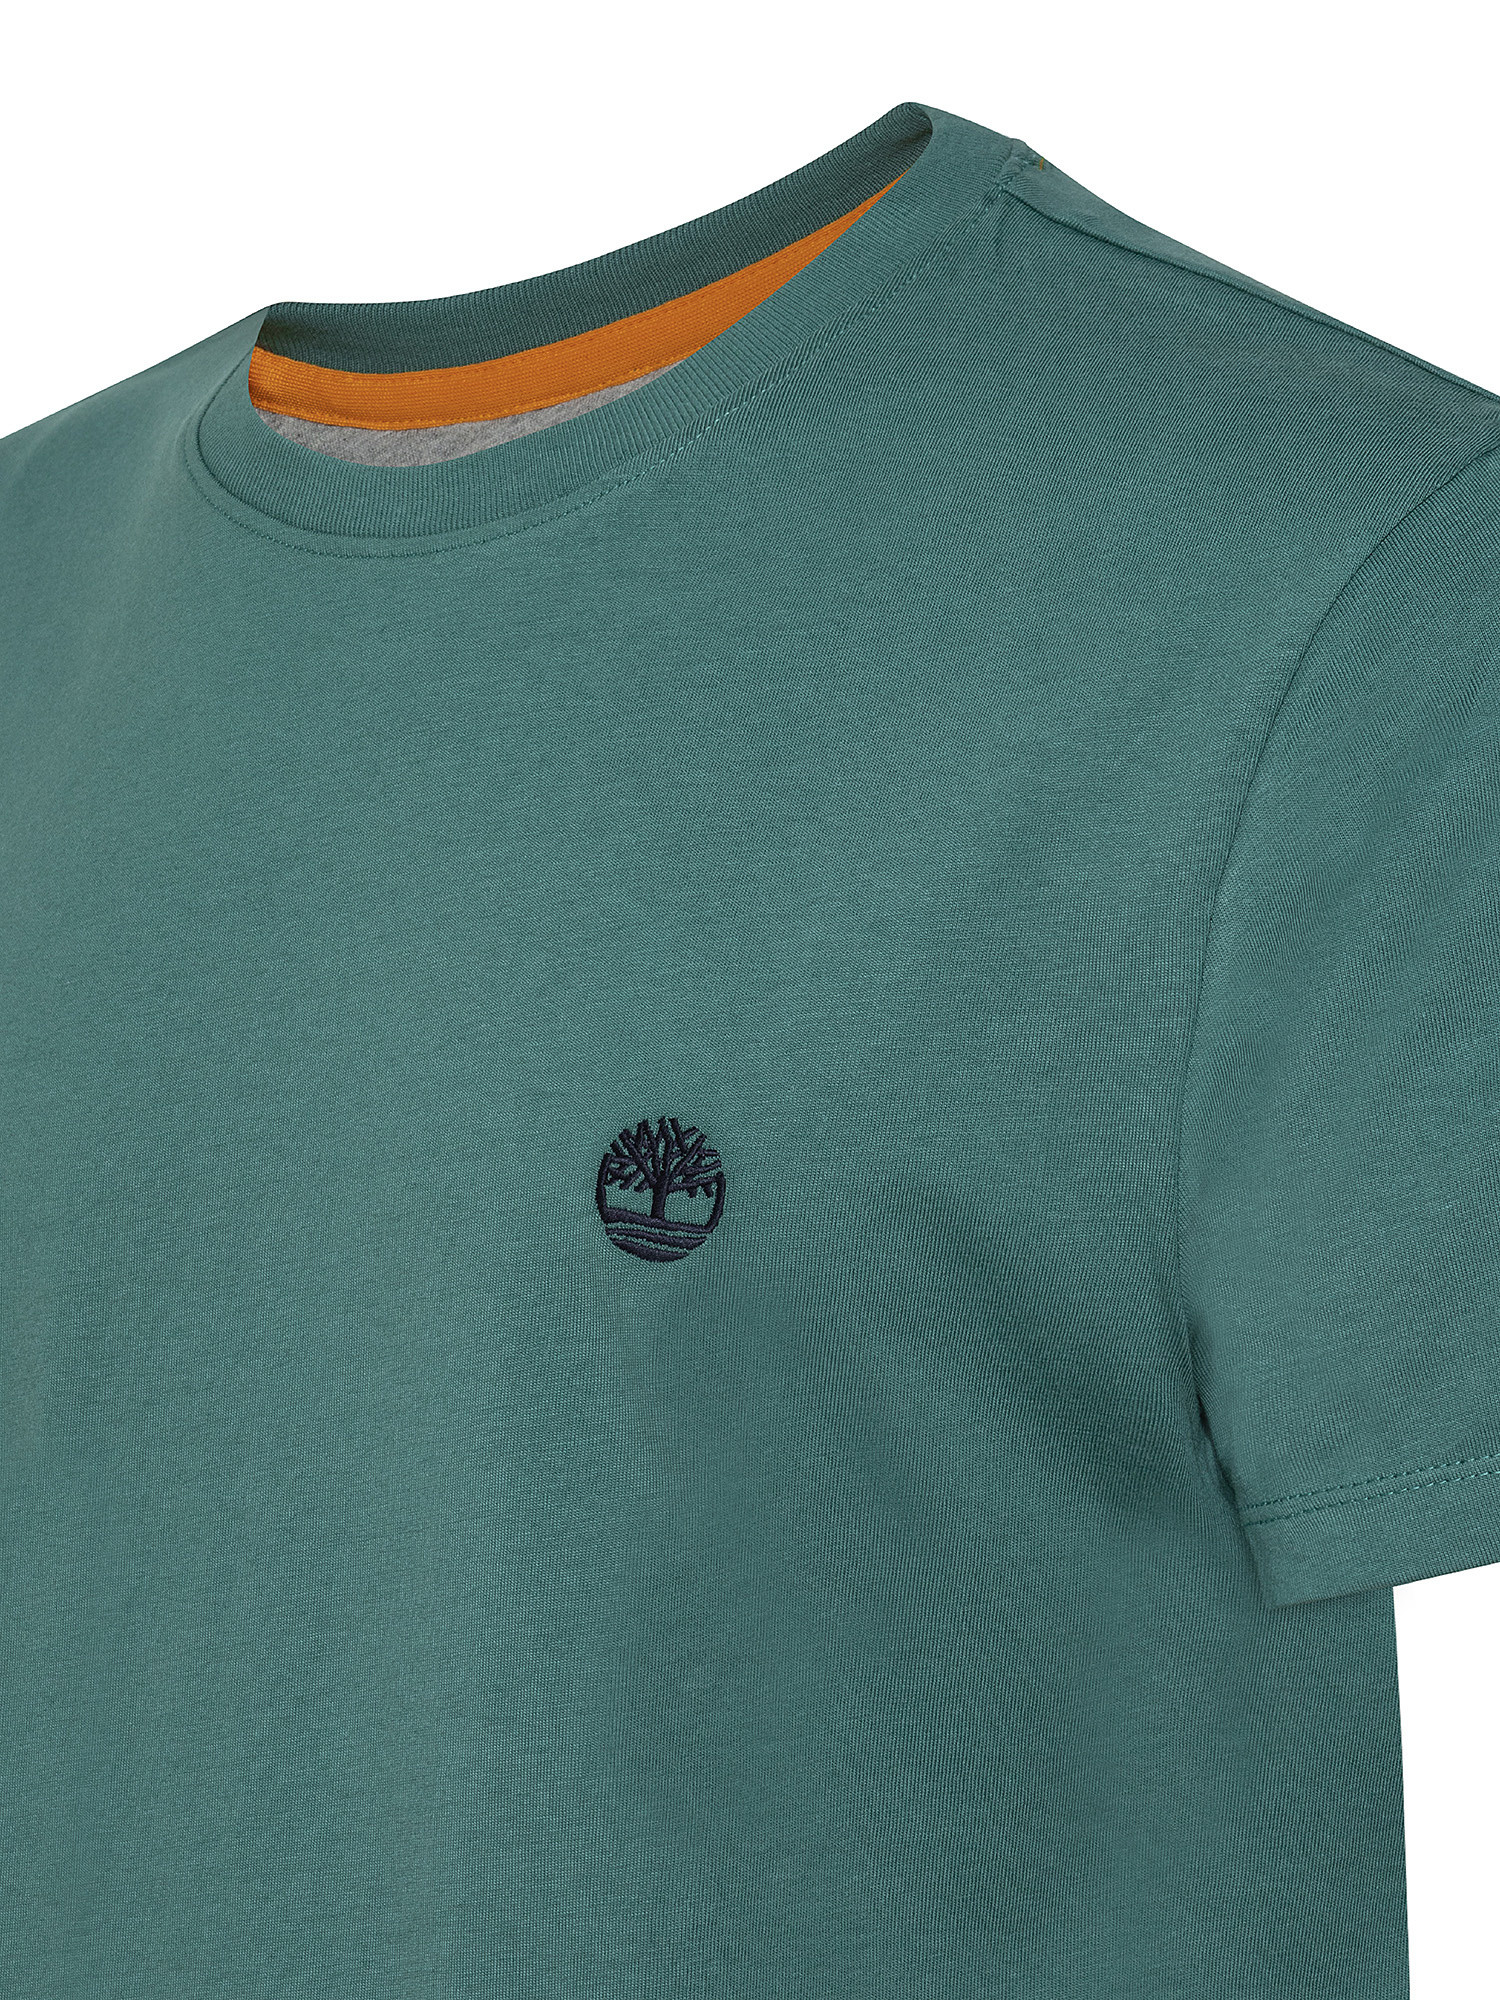 Dunstan River Men's T-Shirt, Green, large image number 2